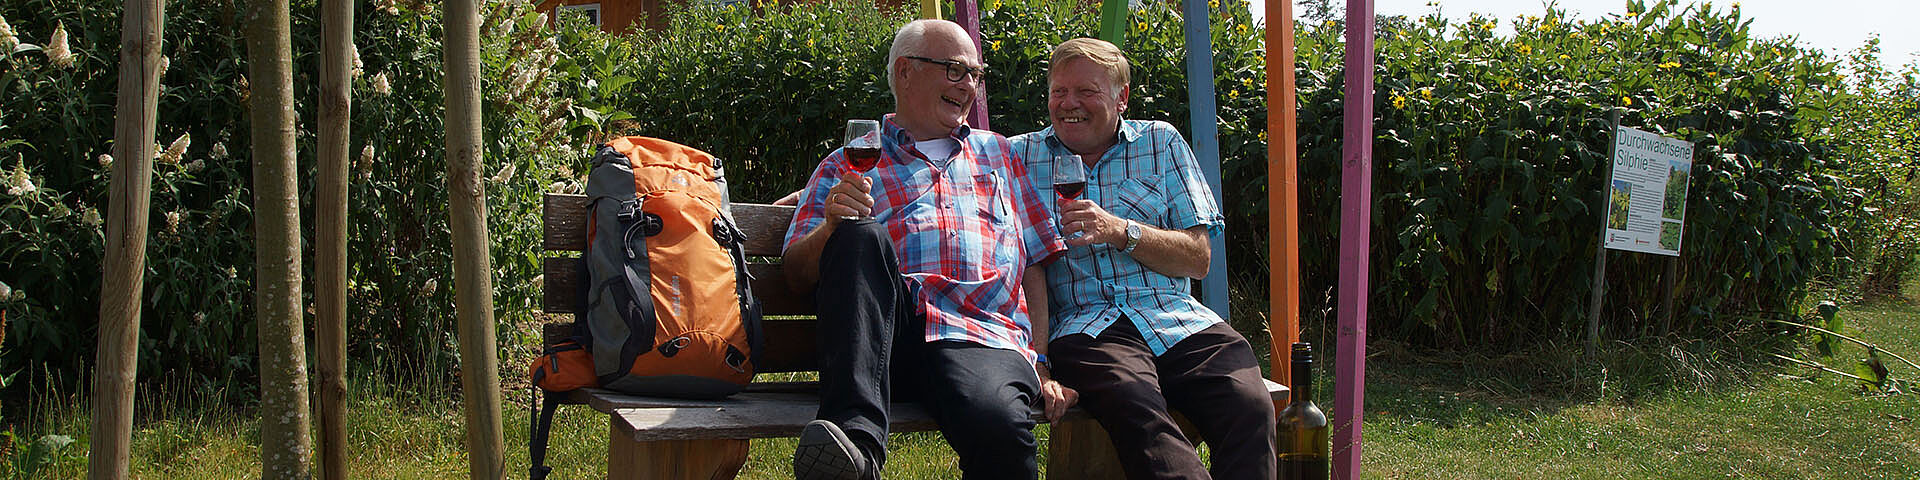 Zwei Männer sitzen mit einem Wanderrucksack und Weingläsern auf einer Bank. Im Hintergrund sind die bunten Stelen der Landesgartenschau Öhringen 2016 zu erkennen.